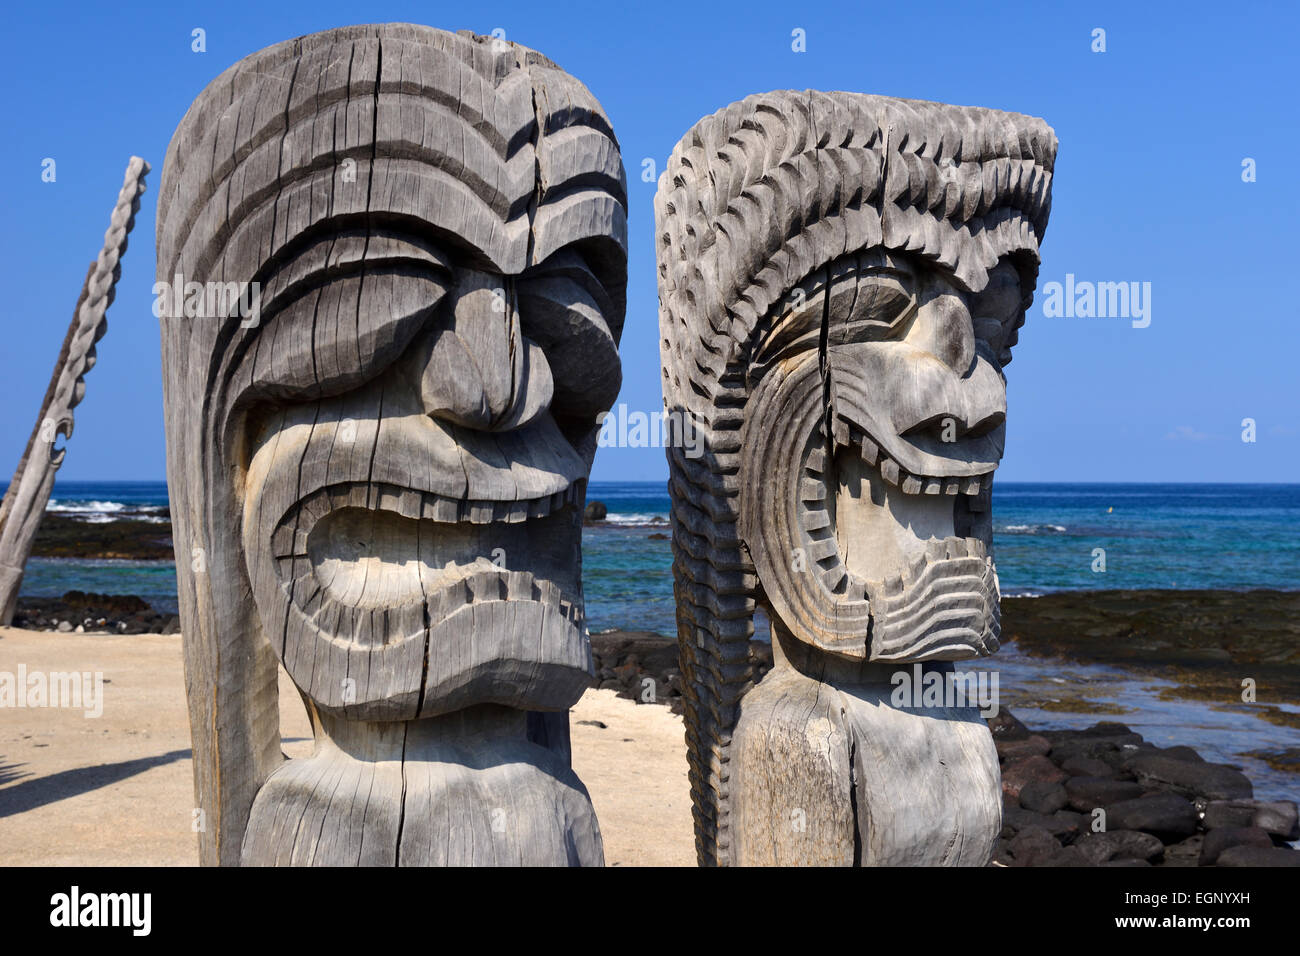 Wooden Ki'i (carved images of gods) - Pu'uhonua O Honaunau National Historical Park, Big Island, Hawaii, USA Stock Photo